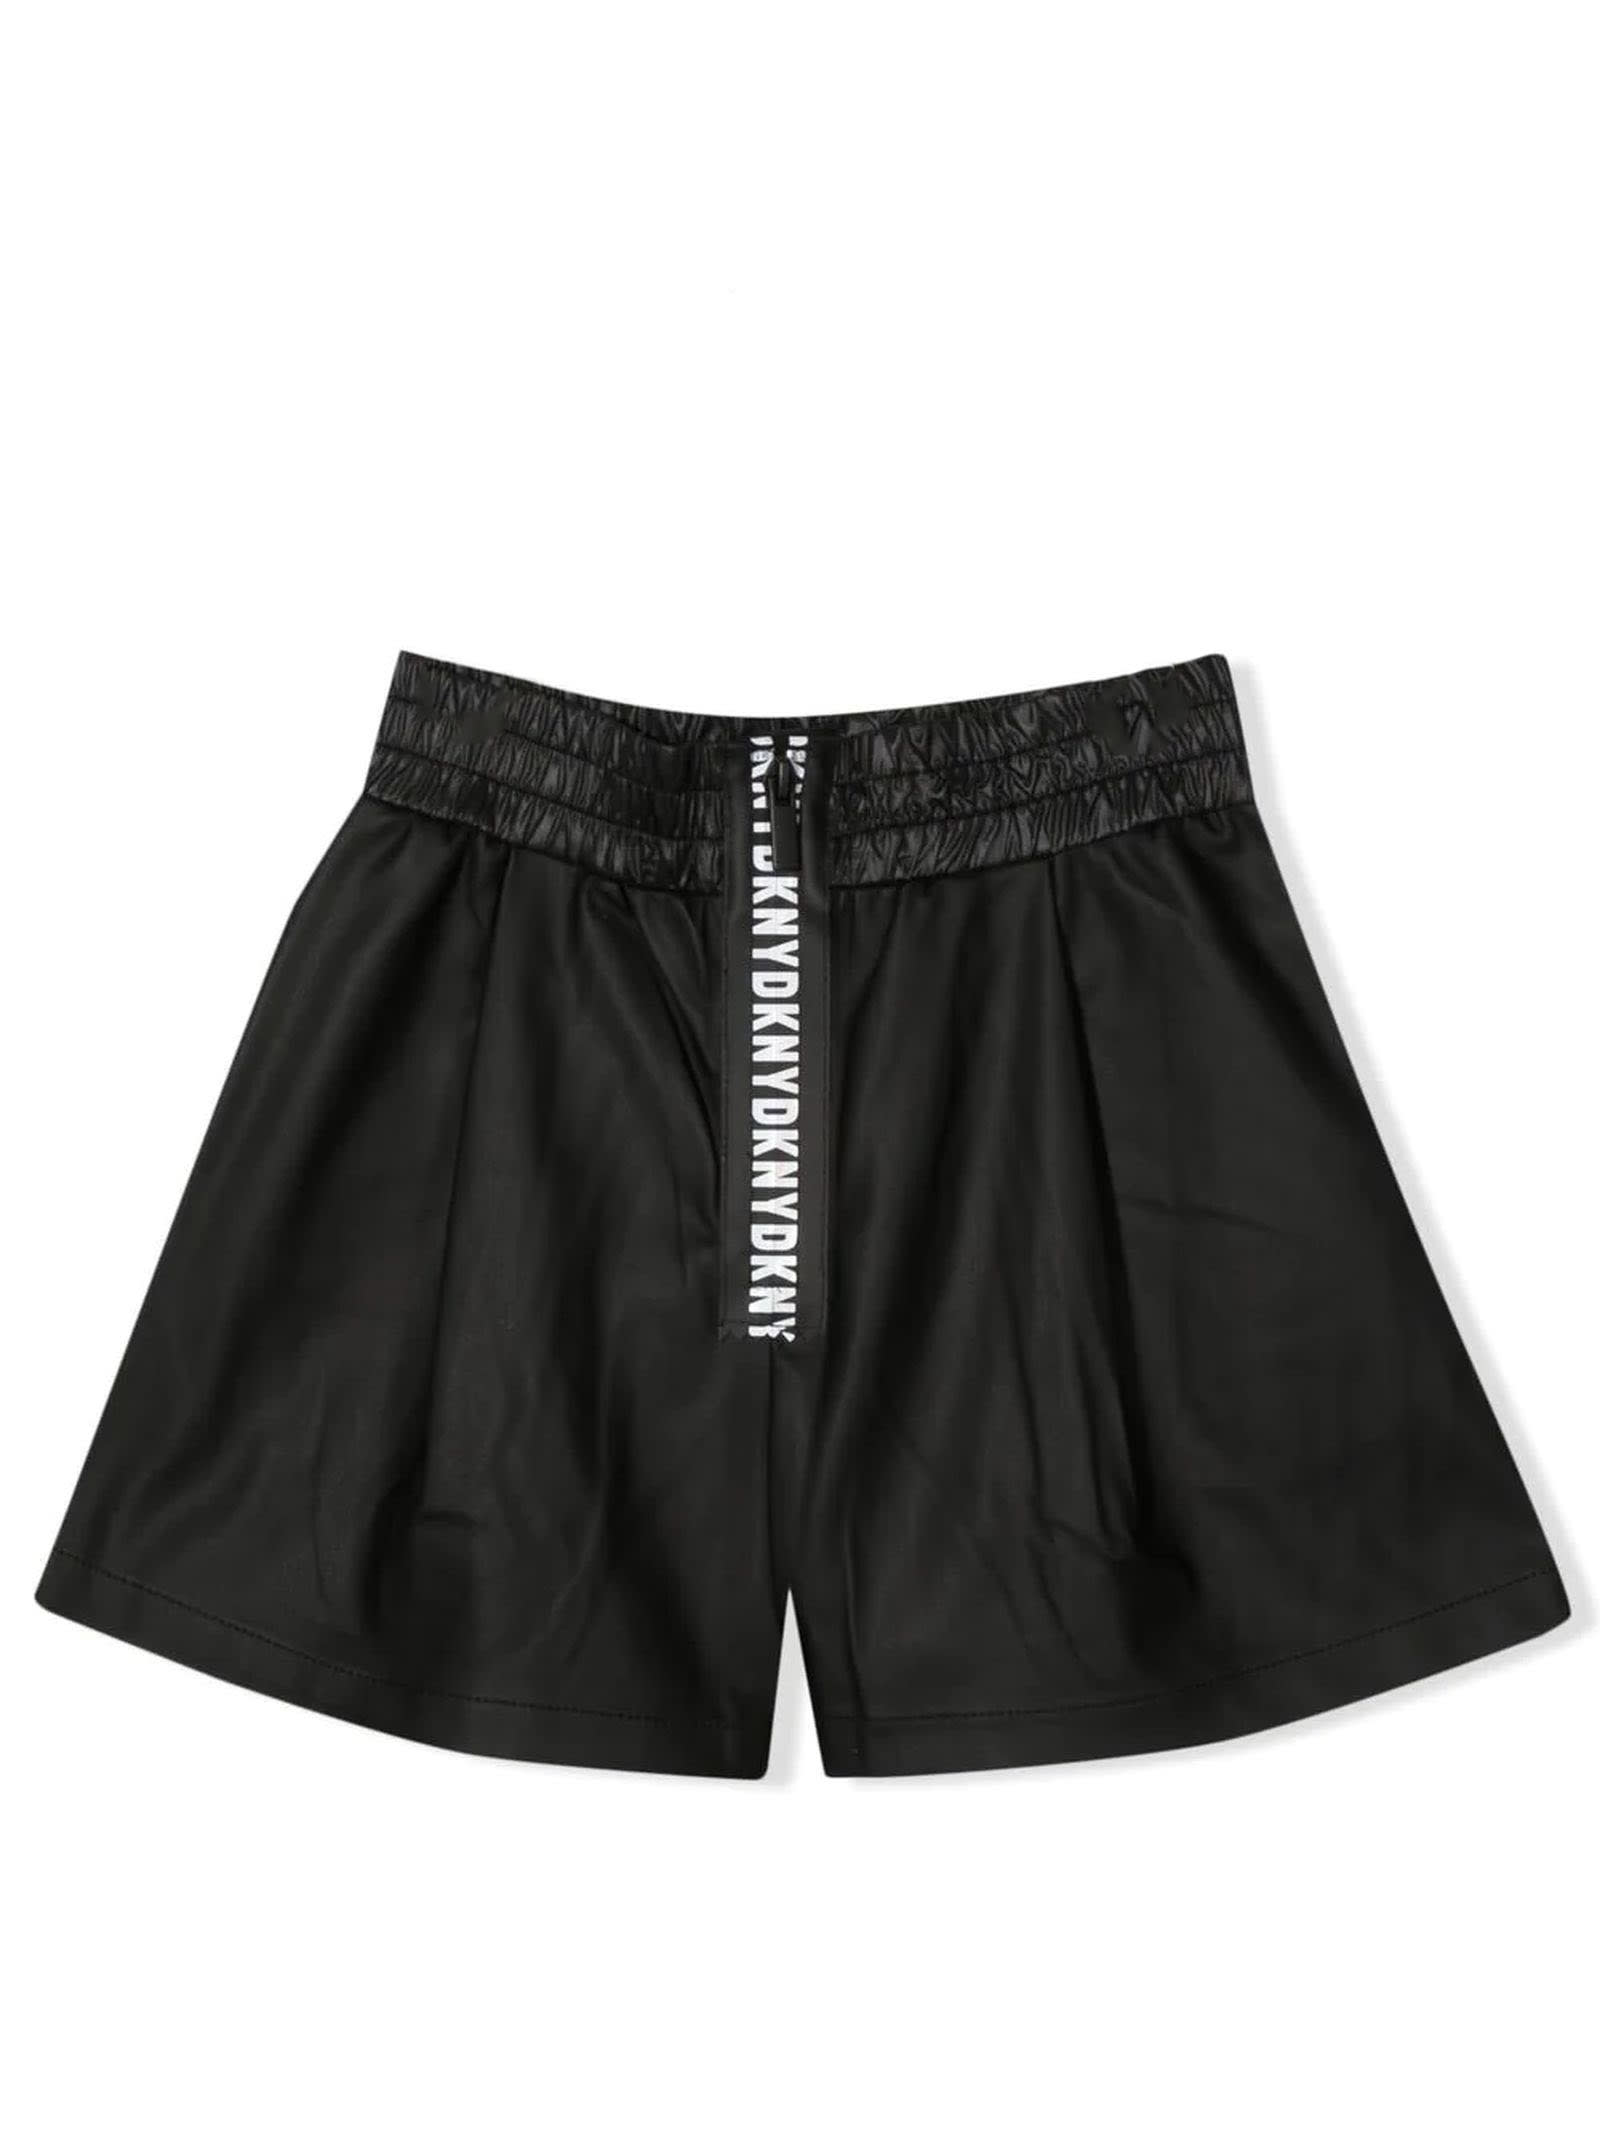 DKNY Black Polyurethane Shorts